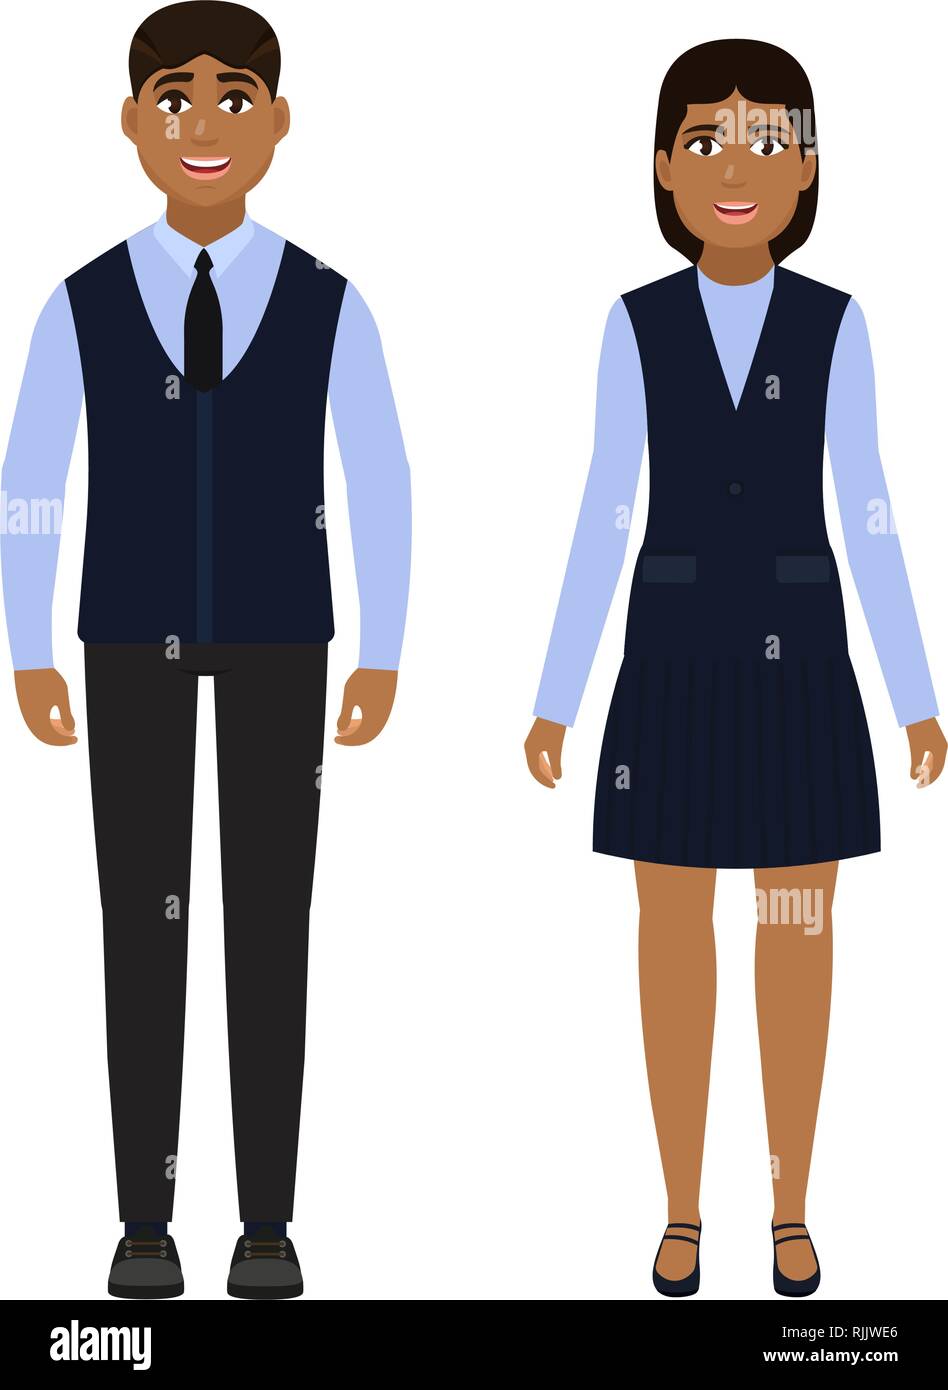 Les enfants vêtus de l'uniforme scolaire, happy boy and girl, les écoliers  caractère dans un style plat Image Vectorielle Stock - Alamy